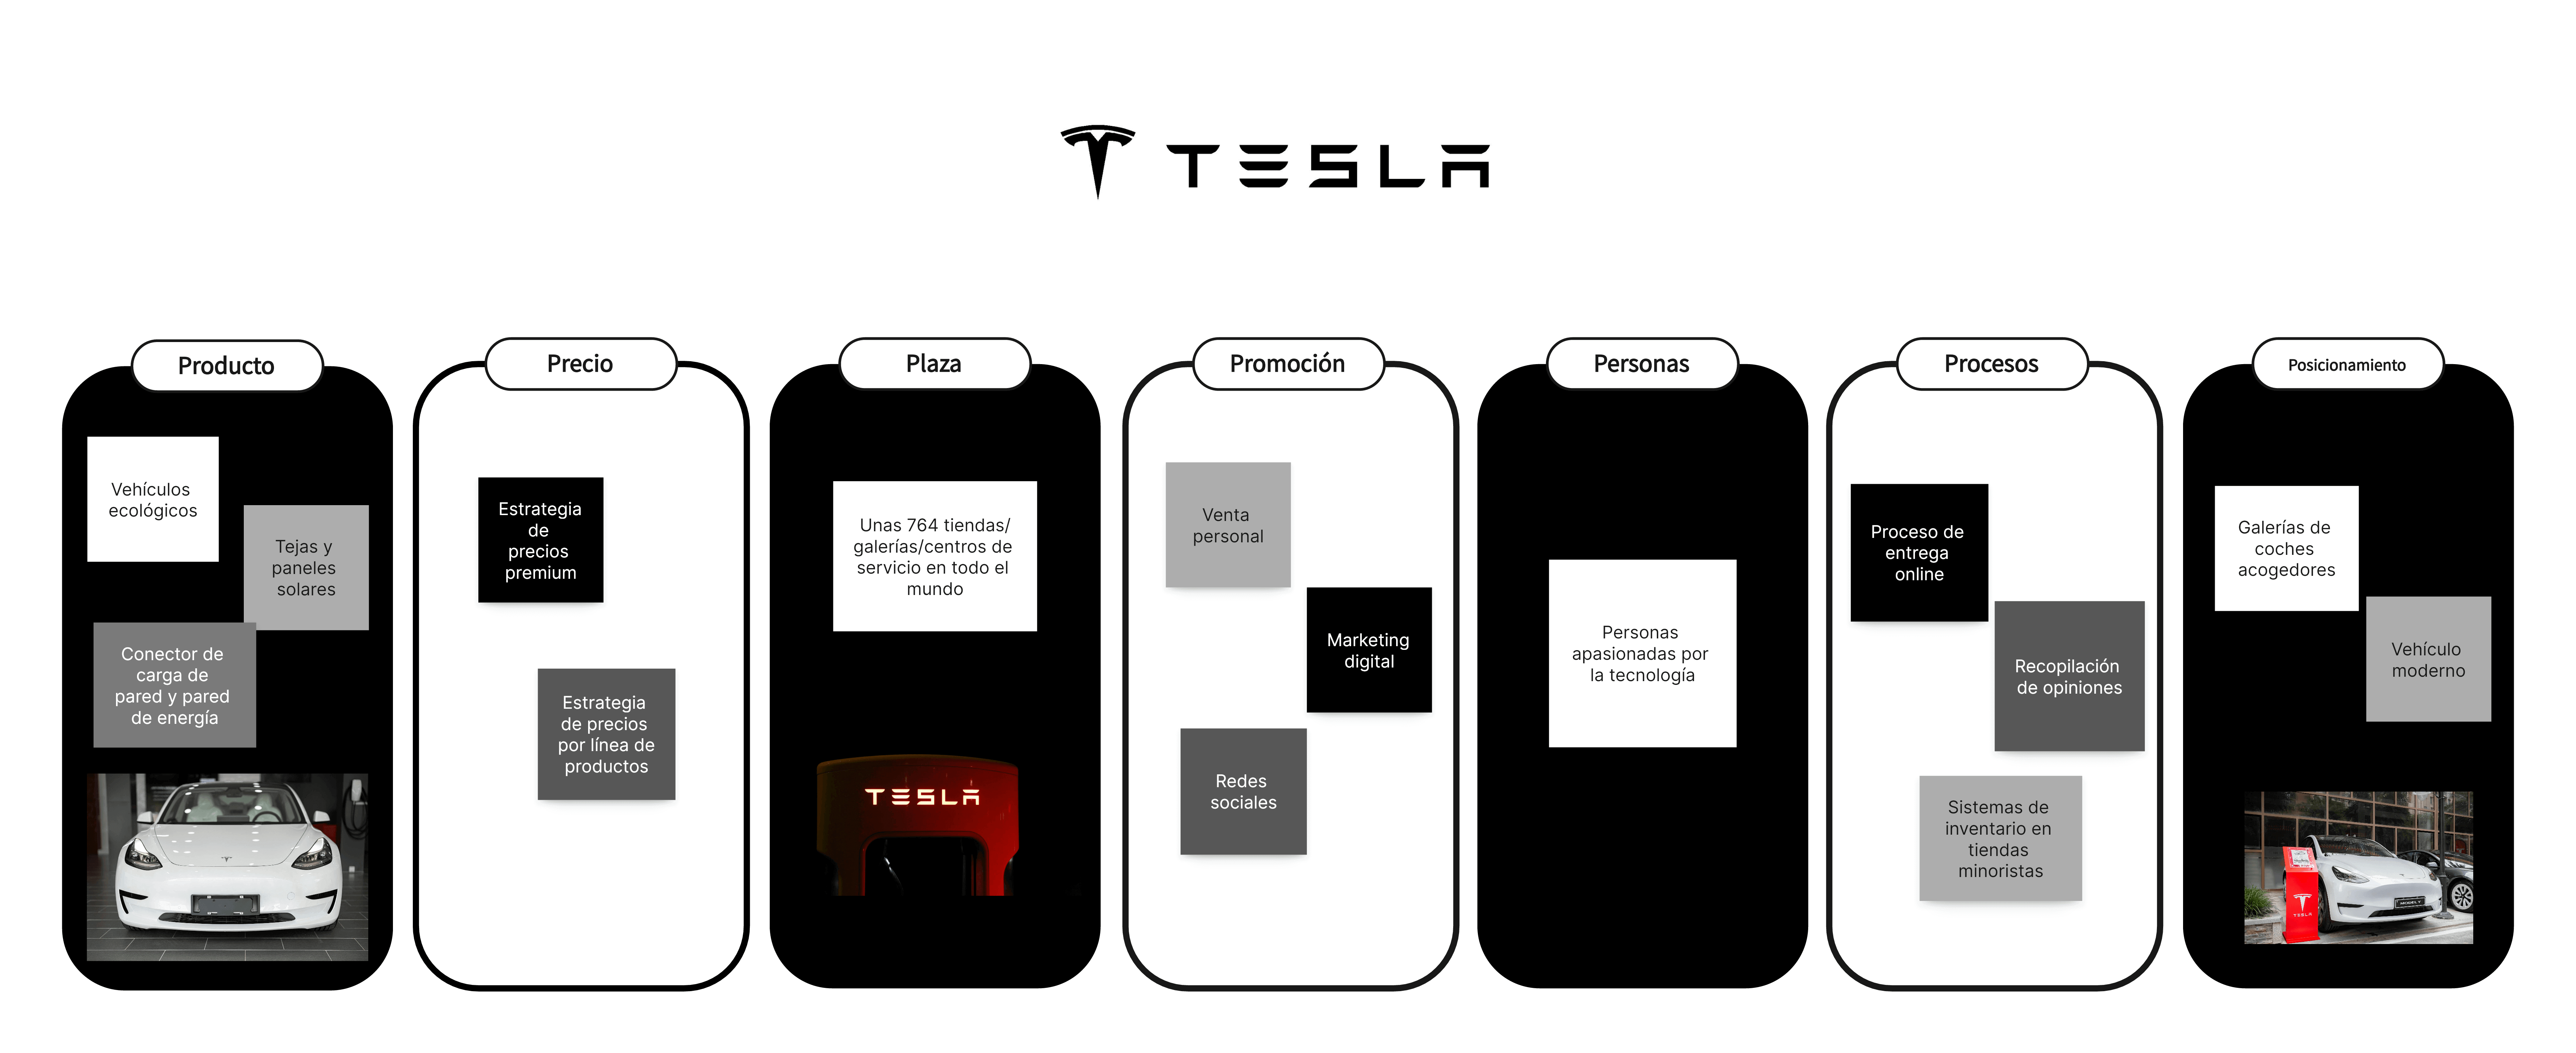 Las 7 P del marketing de Tesla